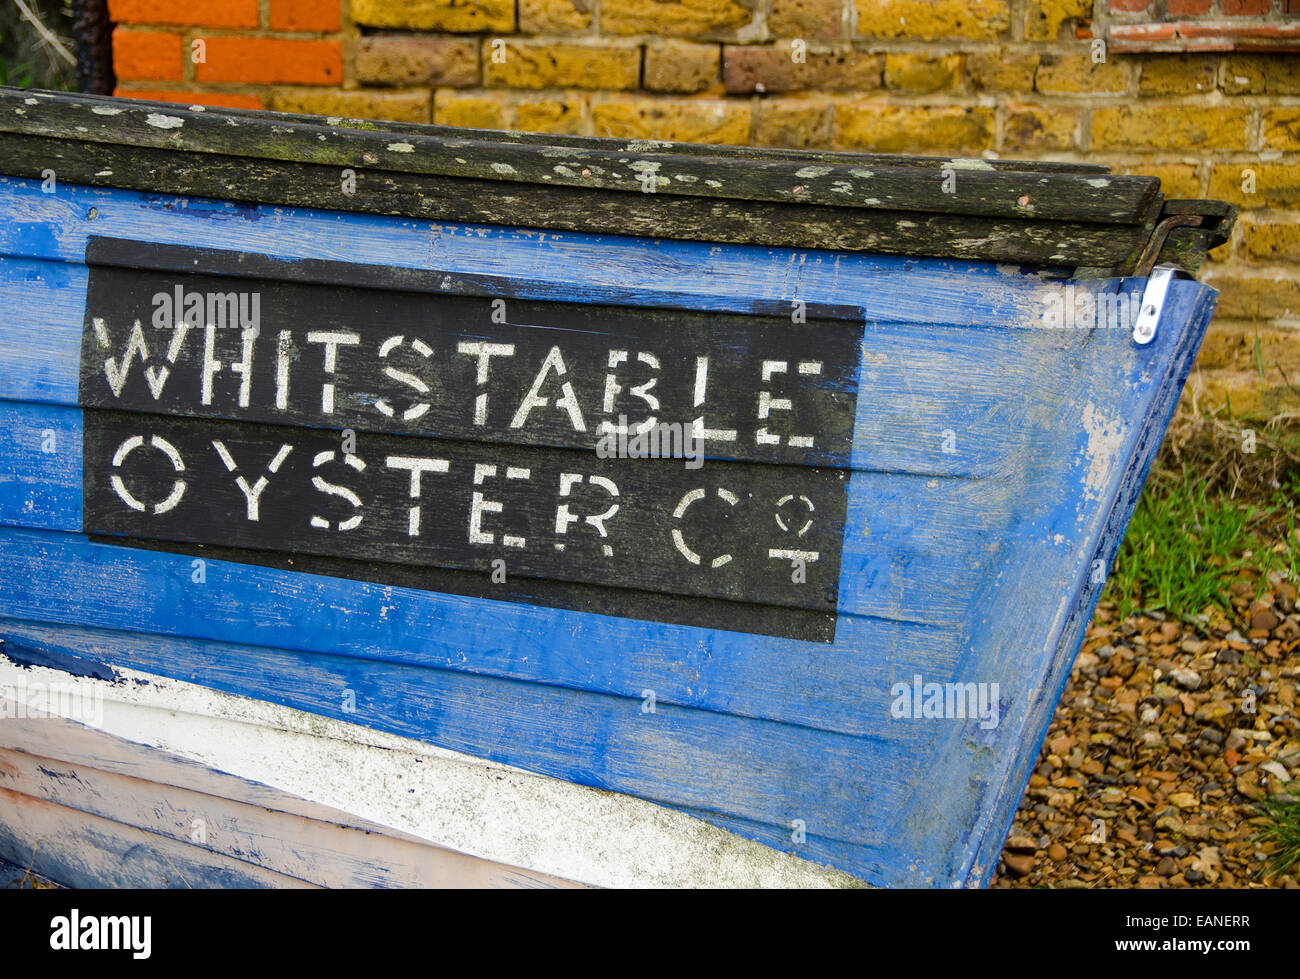 Suspiro de Whitstable Oyster Company, pintado sobre un viejo barco azul. Foto de stock